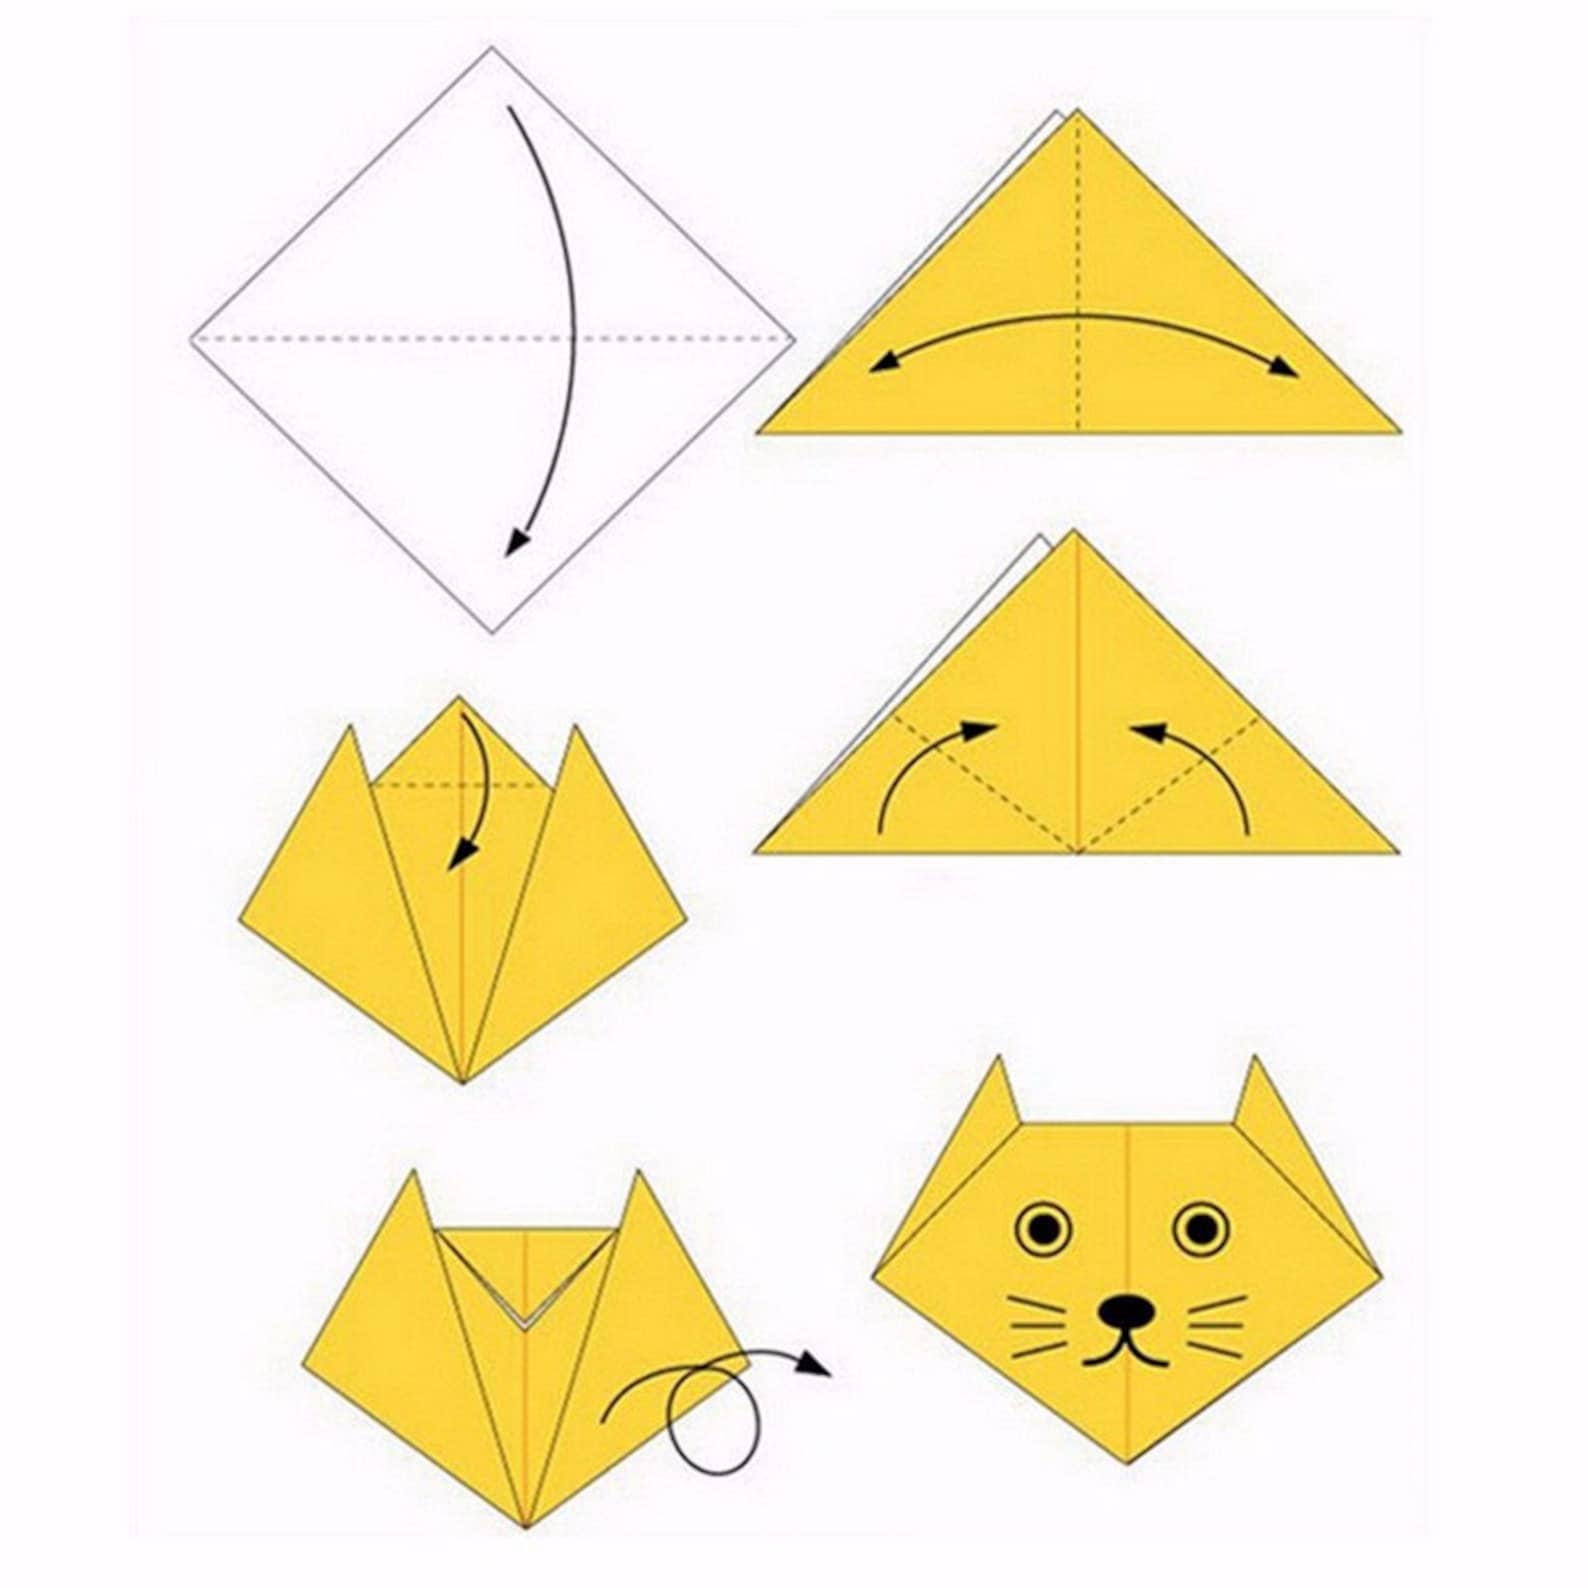 Поделки из а4 легкие. Как сделать модельку из бумаги а 4. Простое оригами из бумаги для начинающих. Оригами из бумаги для начинающих пошагово. Поделки оригами из бумаги своими руками для начинающих пошагово.